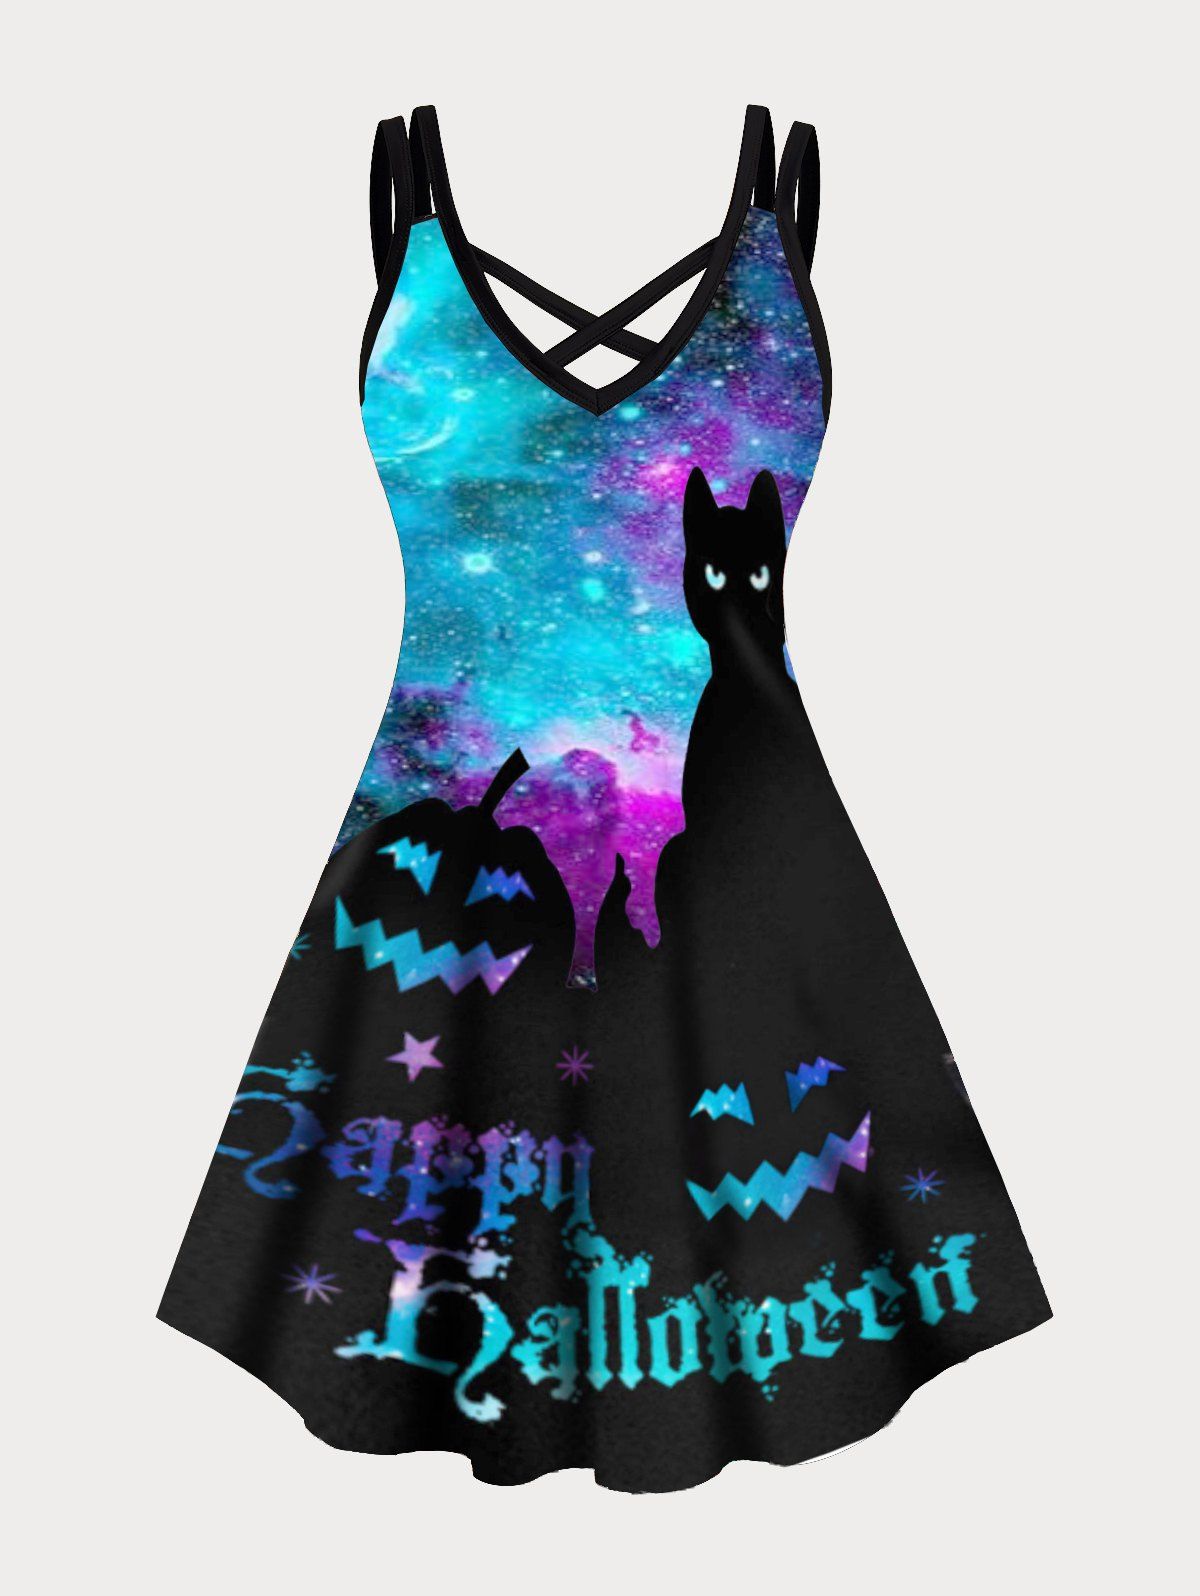 Happy Halloween Black Cat Pumpkin Galaxy Print Plus Size Dress Crisscross Dual Straps Cami Mini Dress - BLUE L